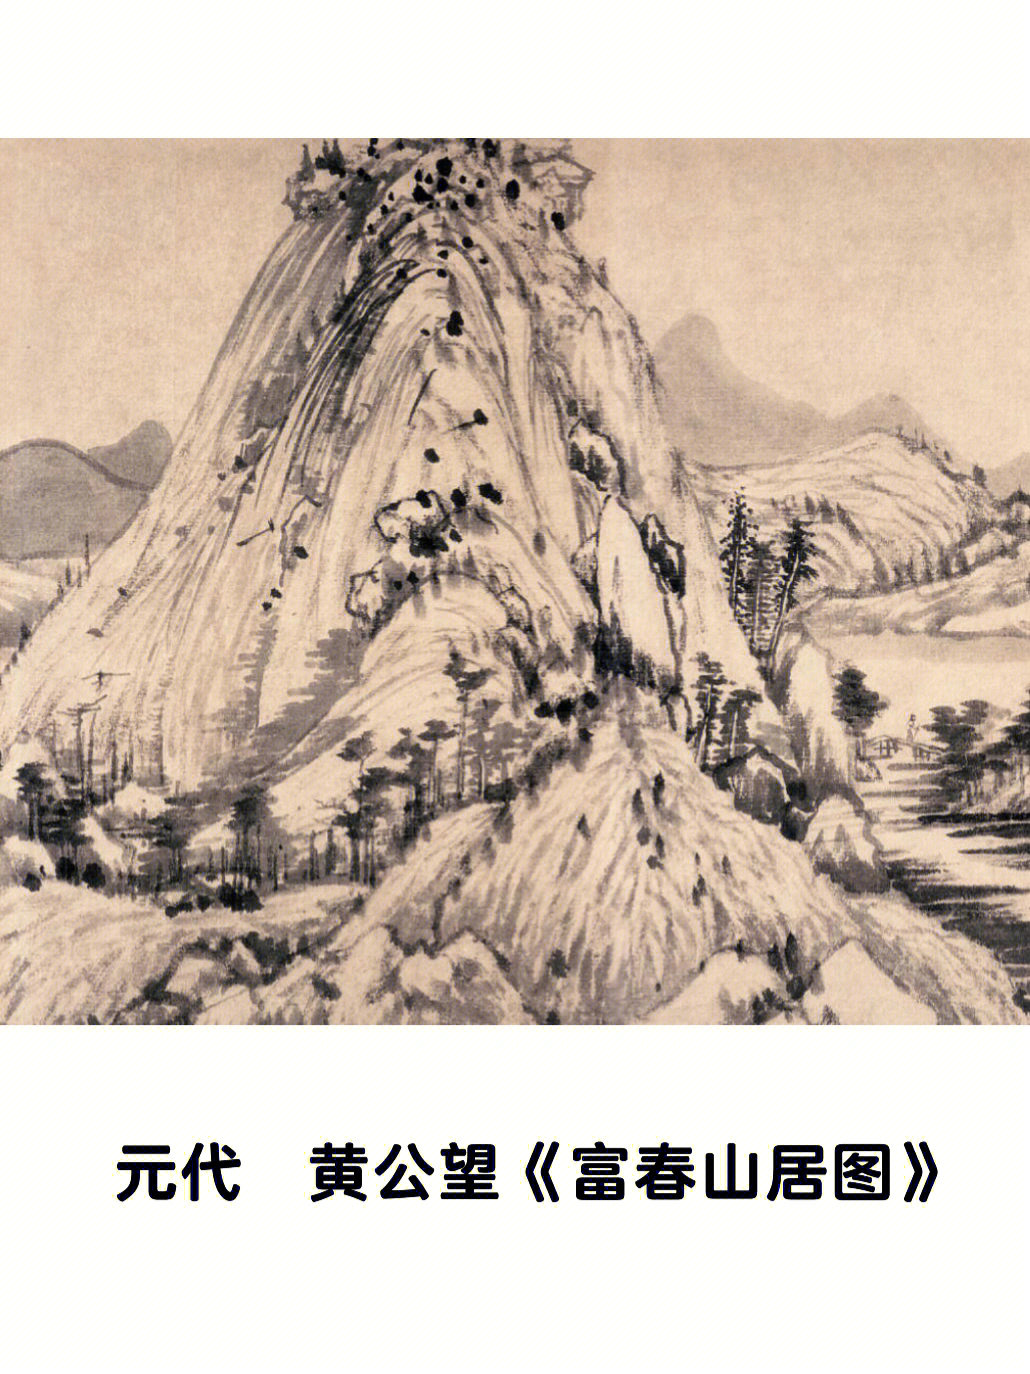 富春山居图前半部分图片